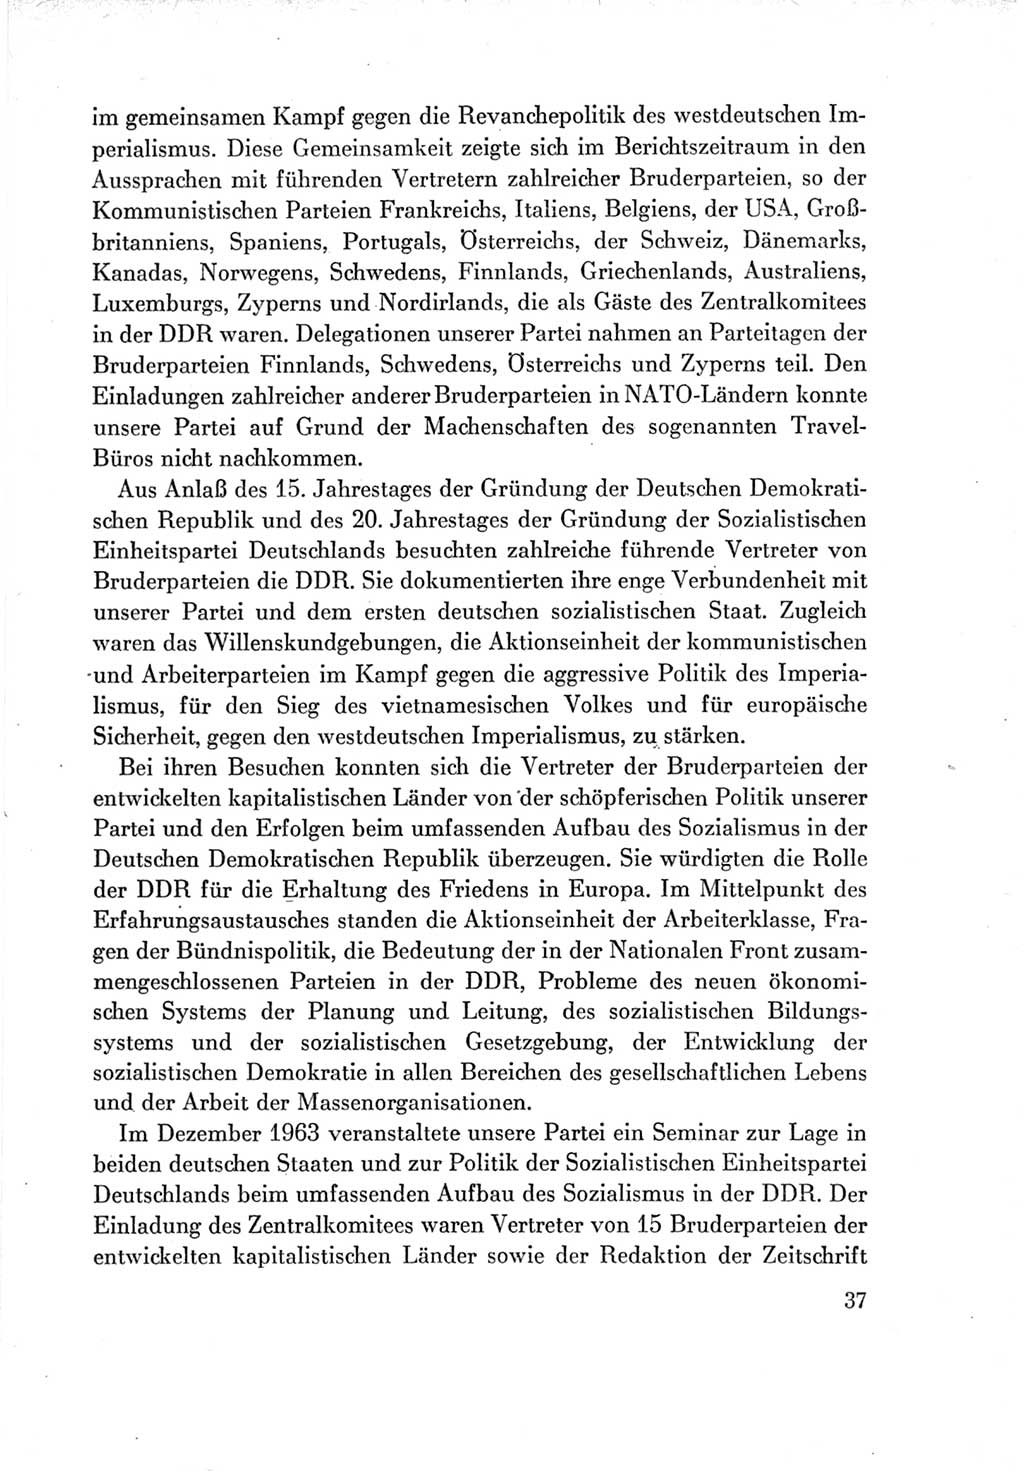 Protokoll der Verhandlungen des Ⅶ. Parteitages der Sozialistischen Einheitspartei Deutschlands (SED) [Deutsche Demokratische Republik (DDR)] 1967, Band Ⅳ, Seite 37 (Prot. Verh. Ⅶ. PT SED DDR 1967, Bd. Ⅳ, S. 37)